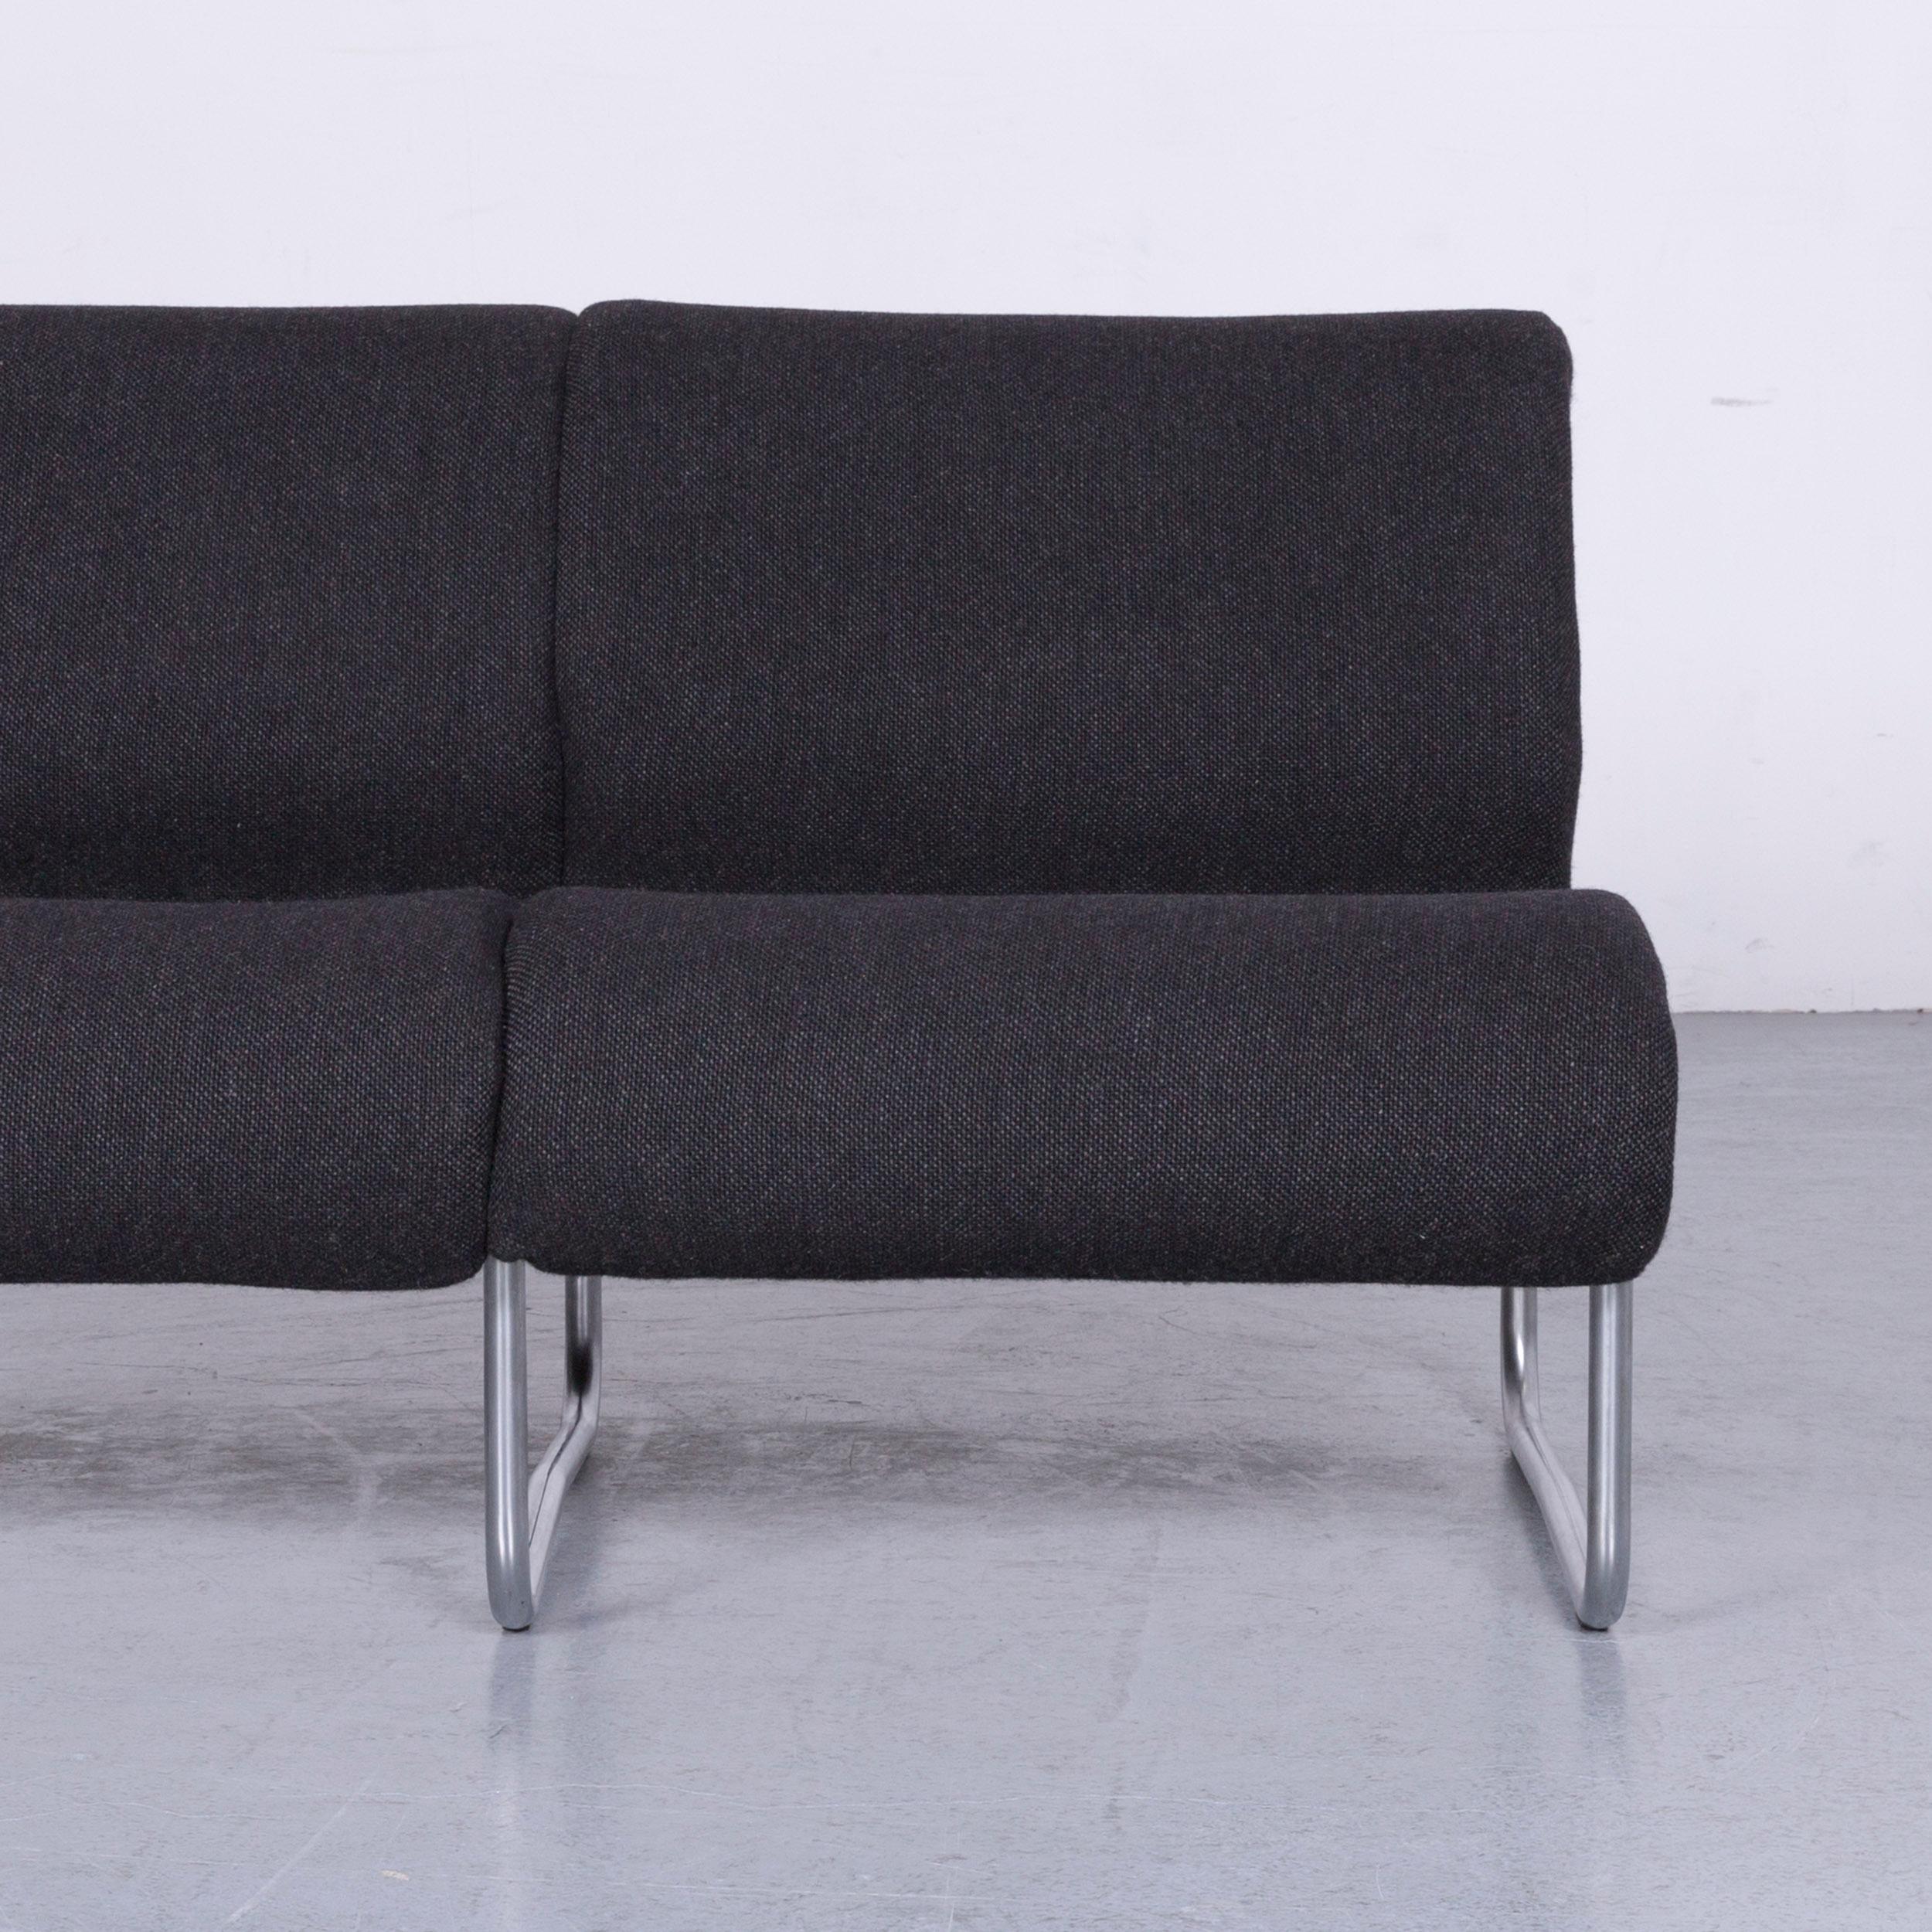 German Fröscher Sitform Jürgen Lange Designer Sofa Fabric Grey Two-Seat Modern